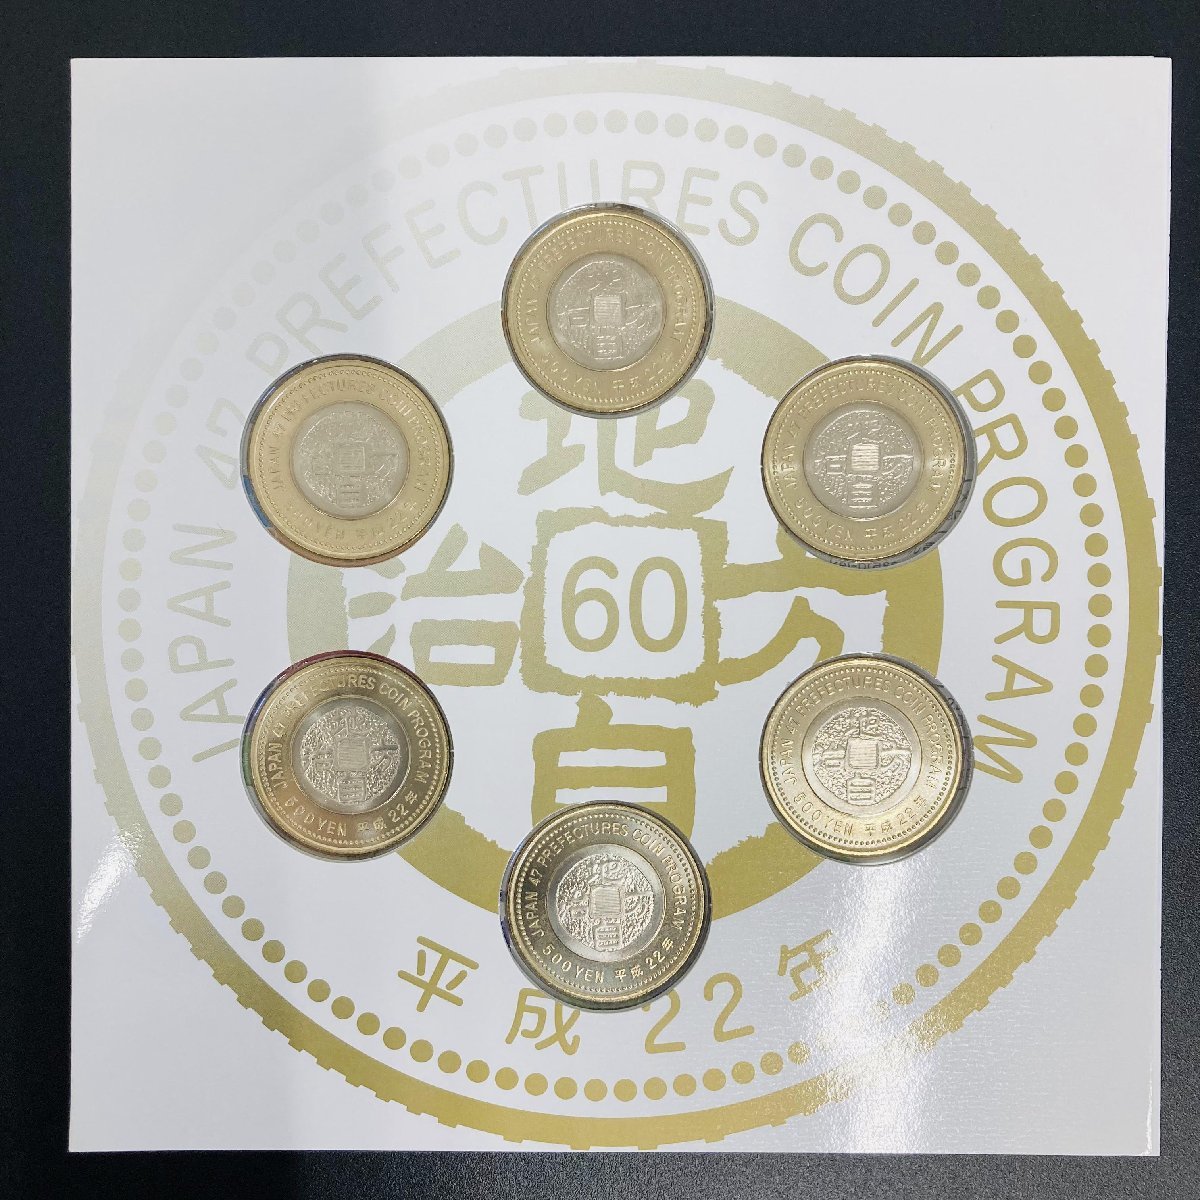 地方自治法施行60周年記念貨幣5百円バイカラークラッド貨幣平成22銘6点